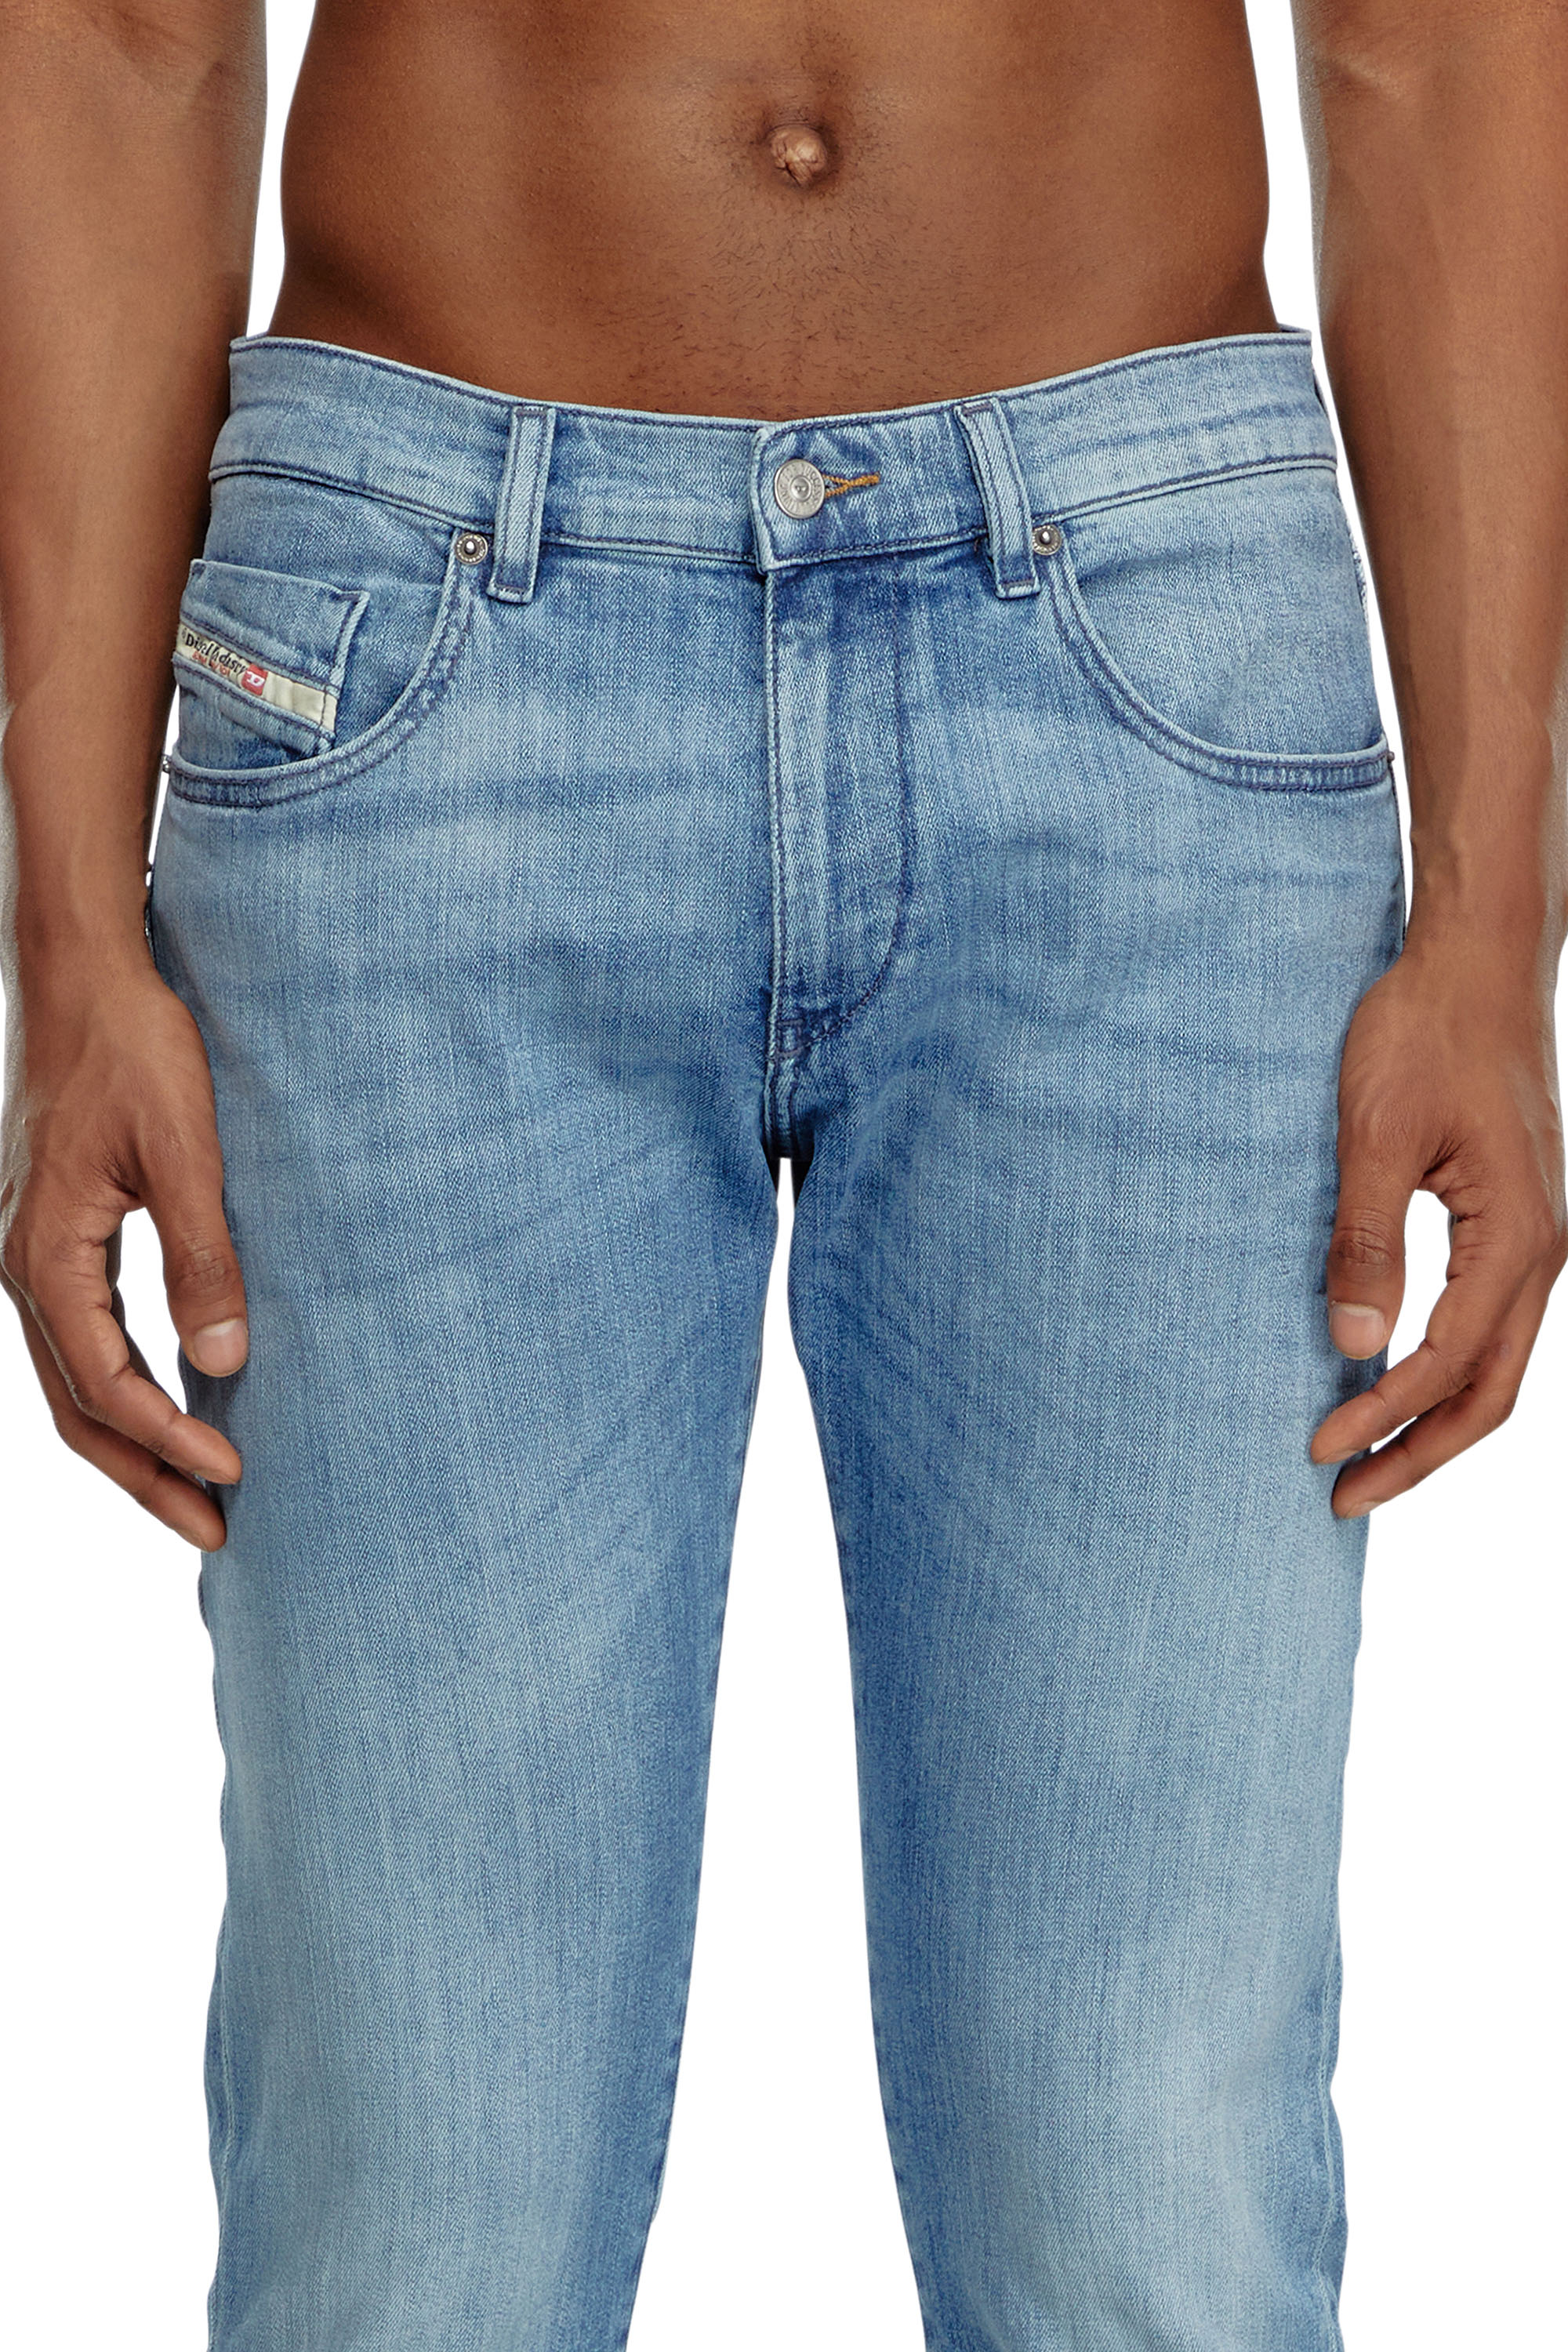 Diesel - Slim Jeans 2019 D-Strukt 0GRDI, Hombre Slim Jeans - 2019 D-Strukt in Azul marino - Image 5